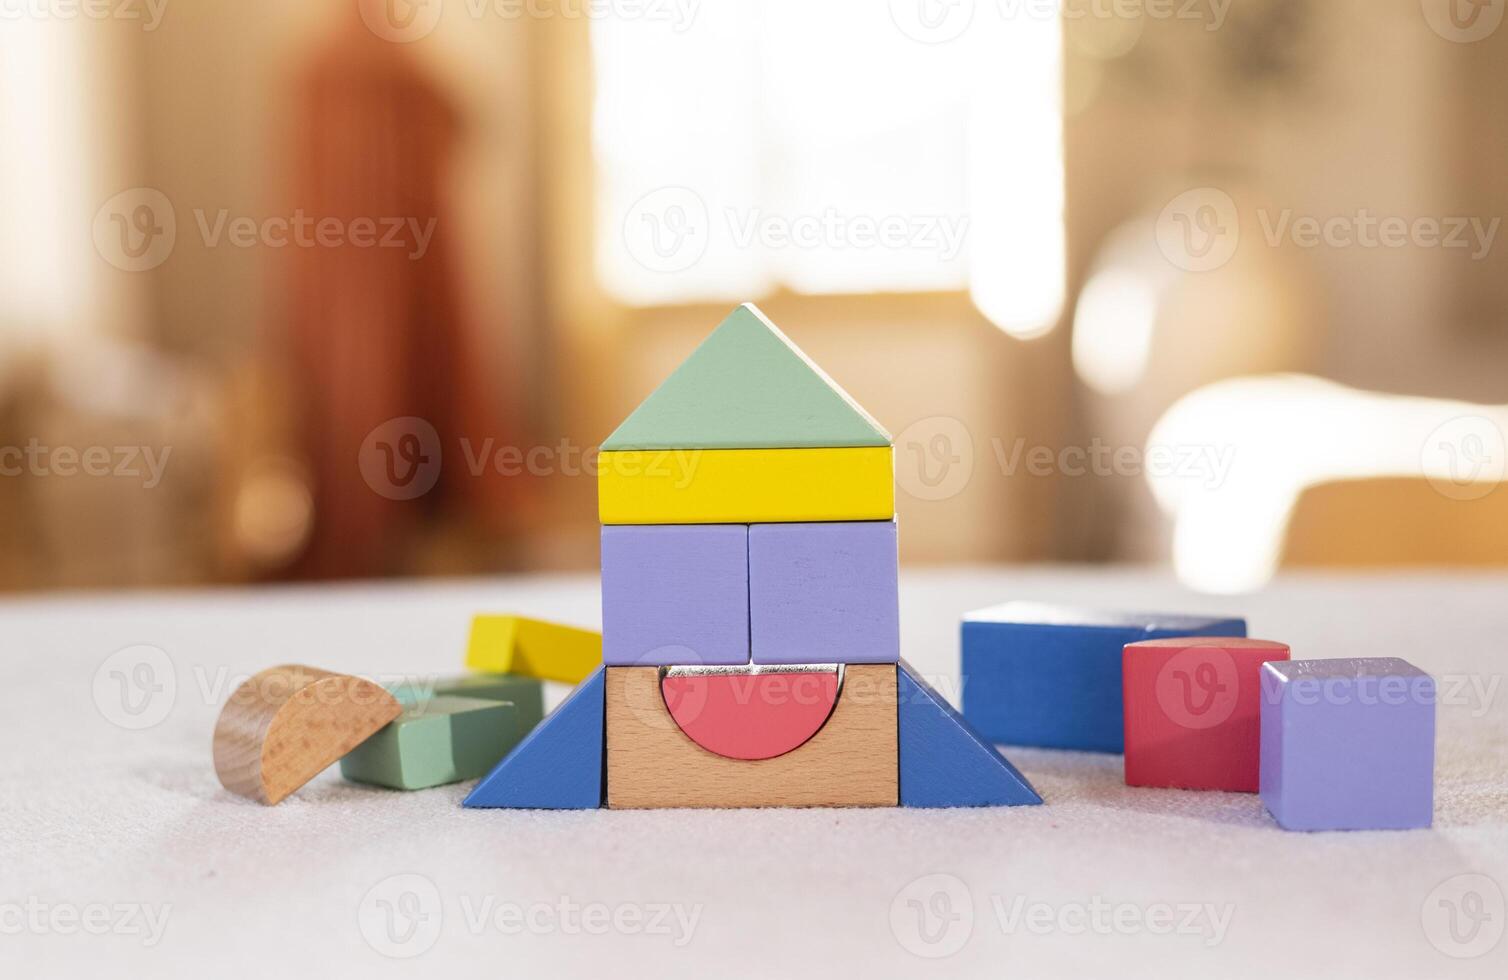 bunt hölzern Blöcke auf Zuhause Tisch. Kreativität Spielzeuge. Kinder Gebäude Blöcke. geometrisch Formen - - Kreis, Dreieck, Quadrat, Rechteck. das Konzept von logisch Denken. foto